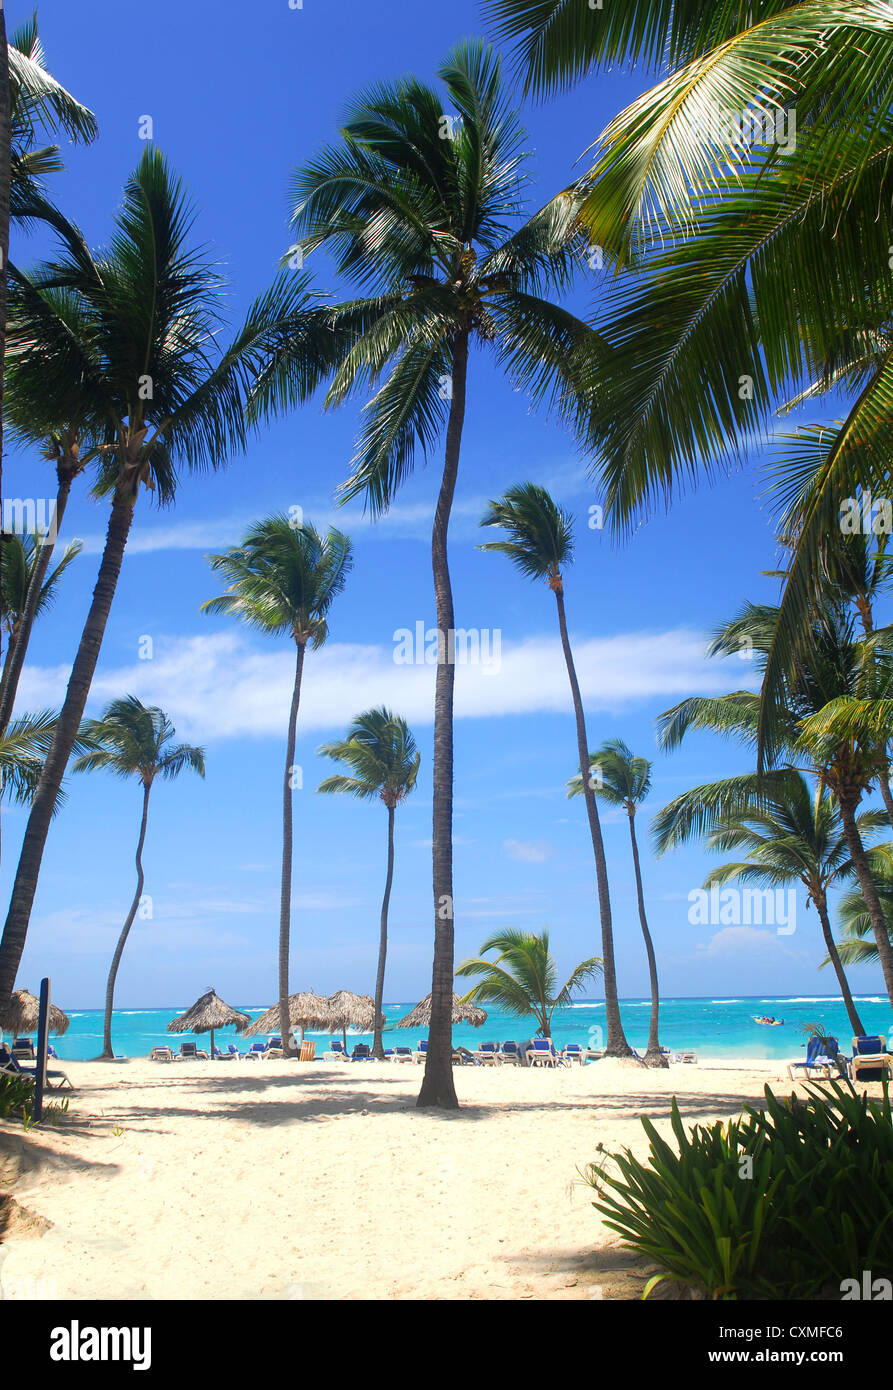 Tropical beach scene in the Dominican Republic Stock Photo